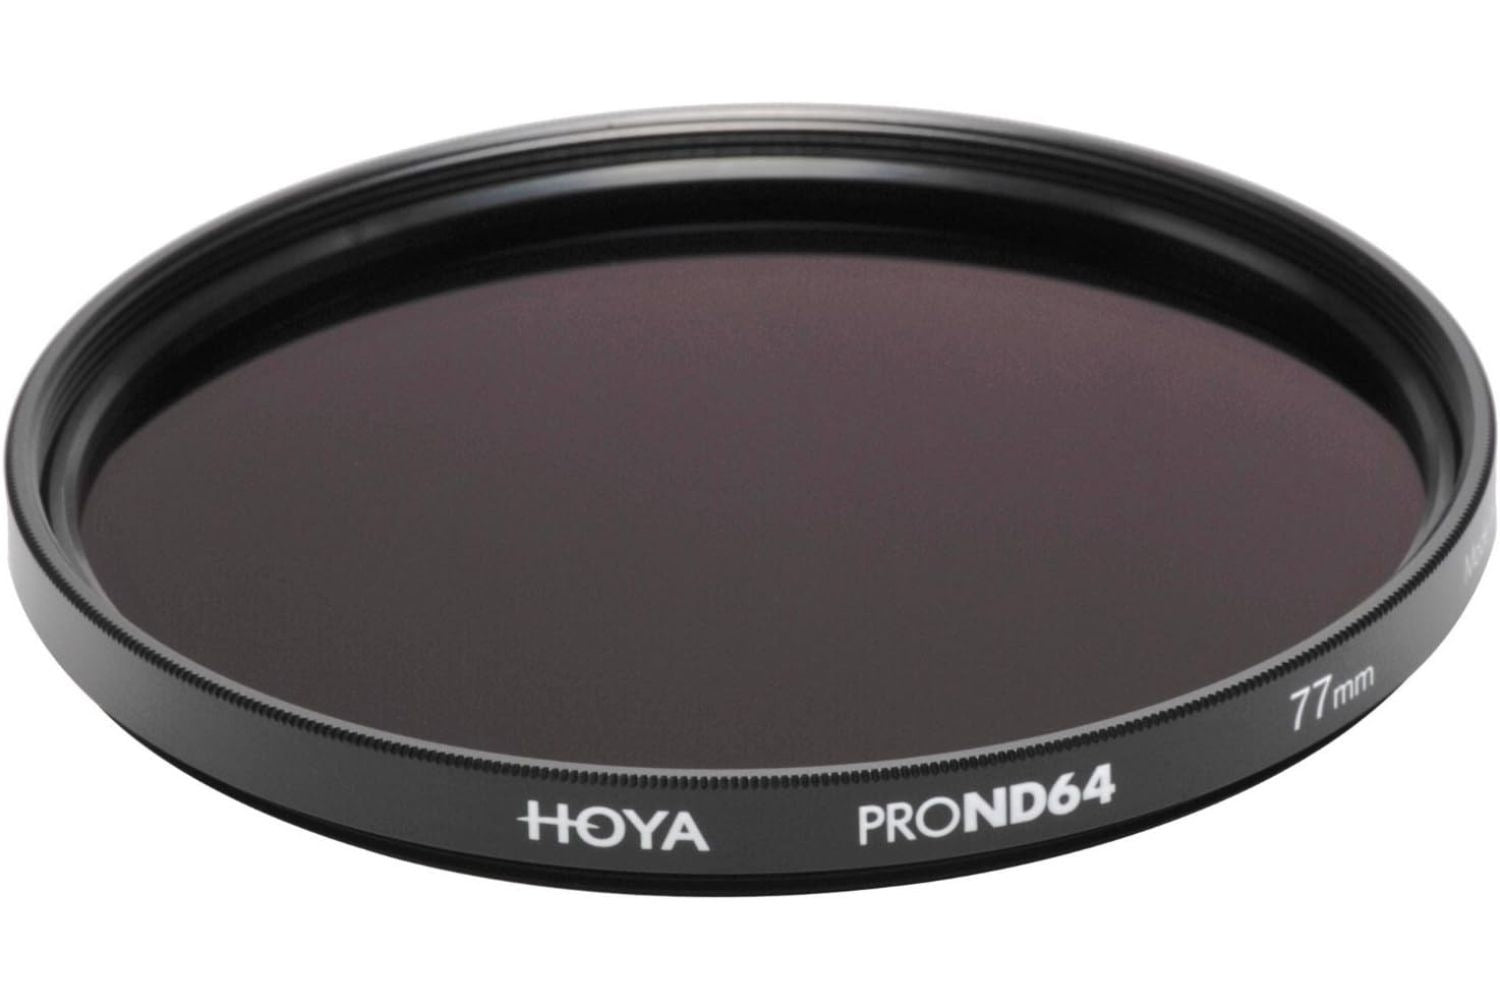 Hoya Pro ND 64 Filter